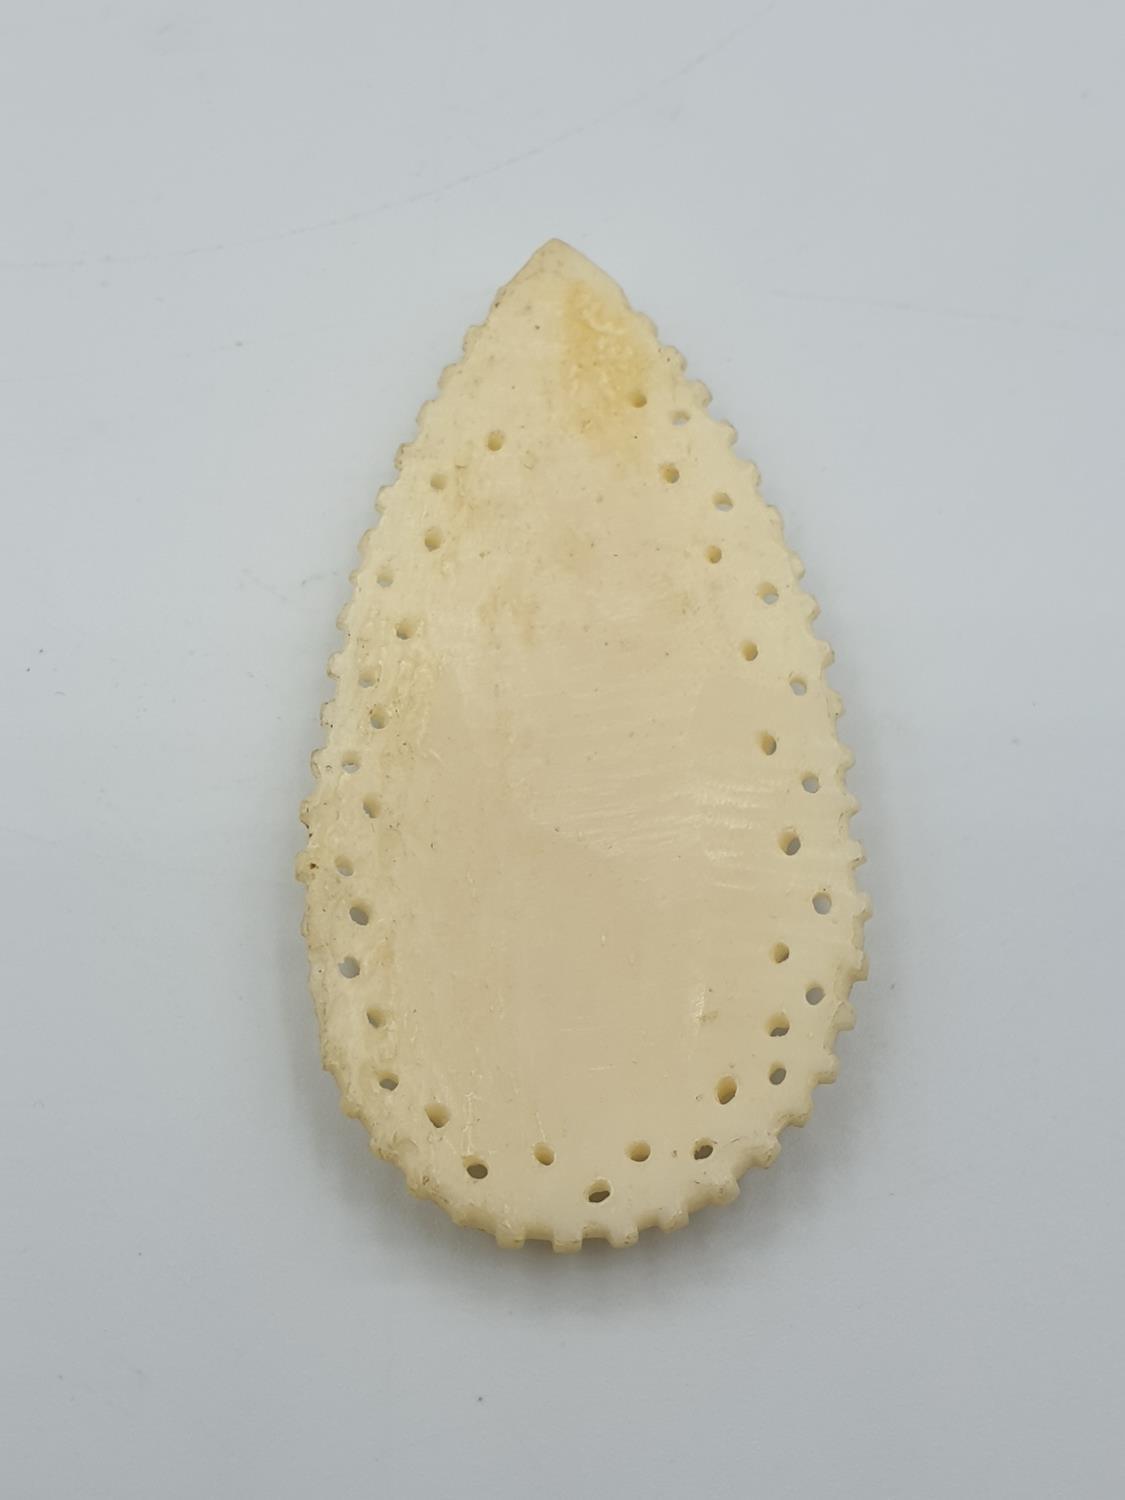 Ivory large pendant - Image 3 of 3